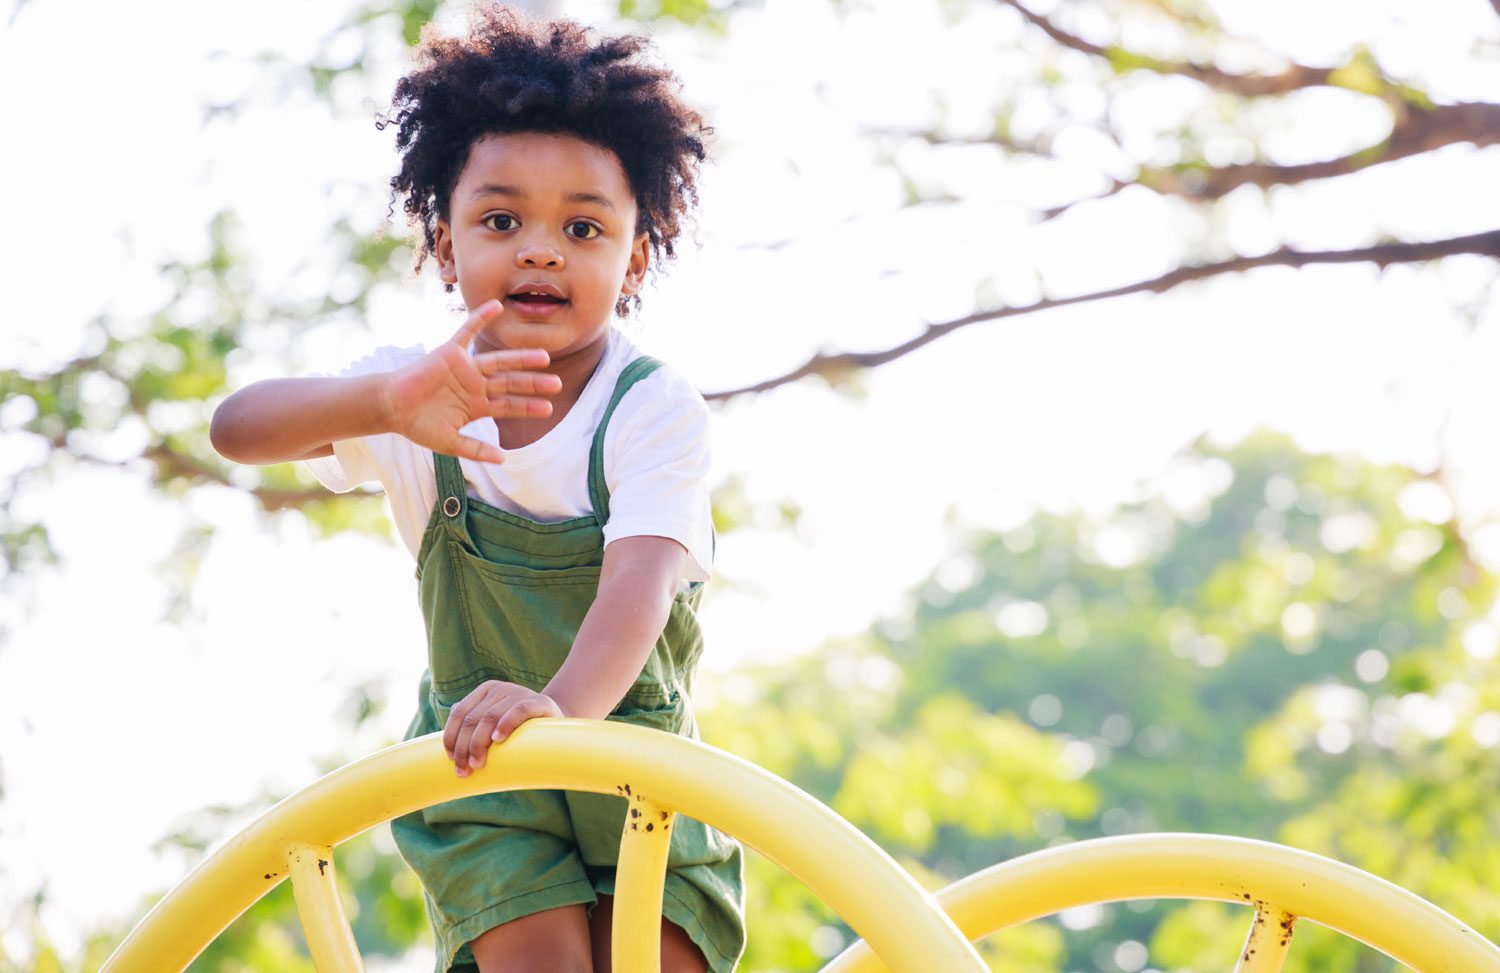 child climbing on playground equipment and waving